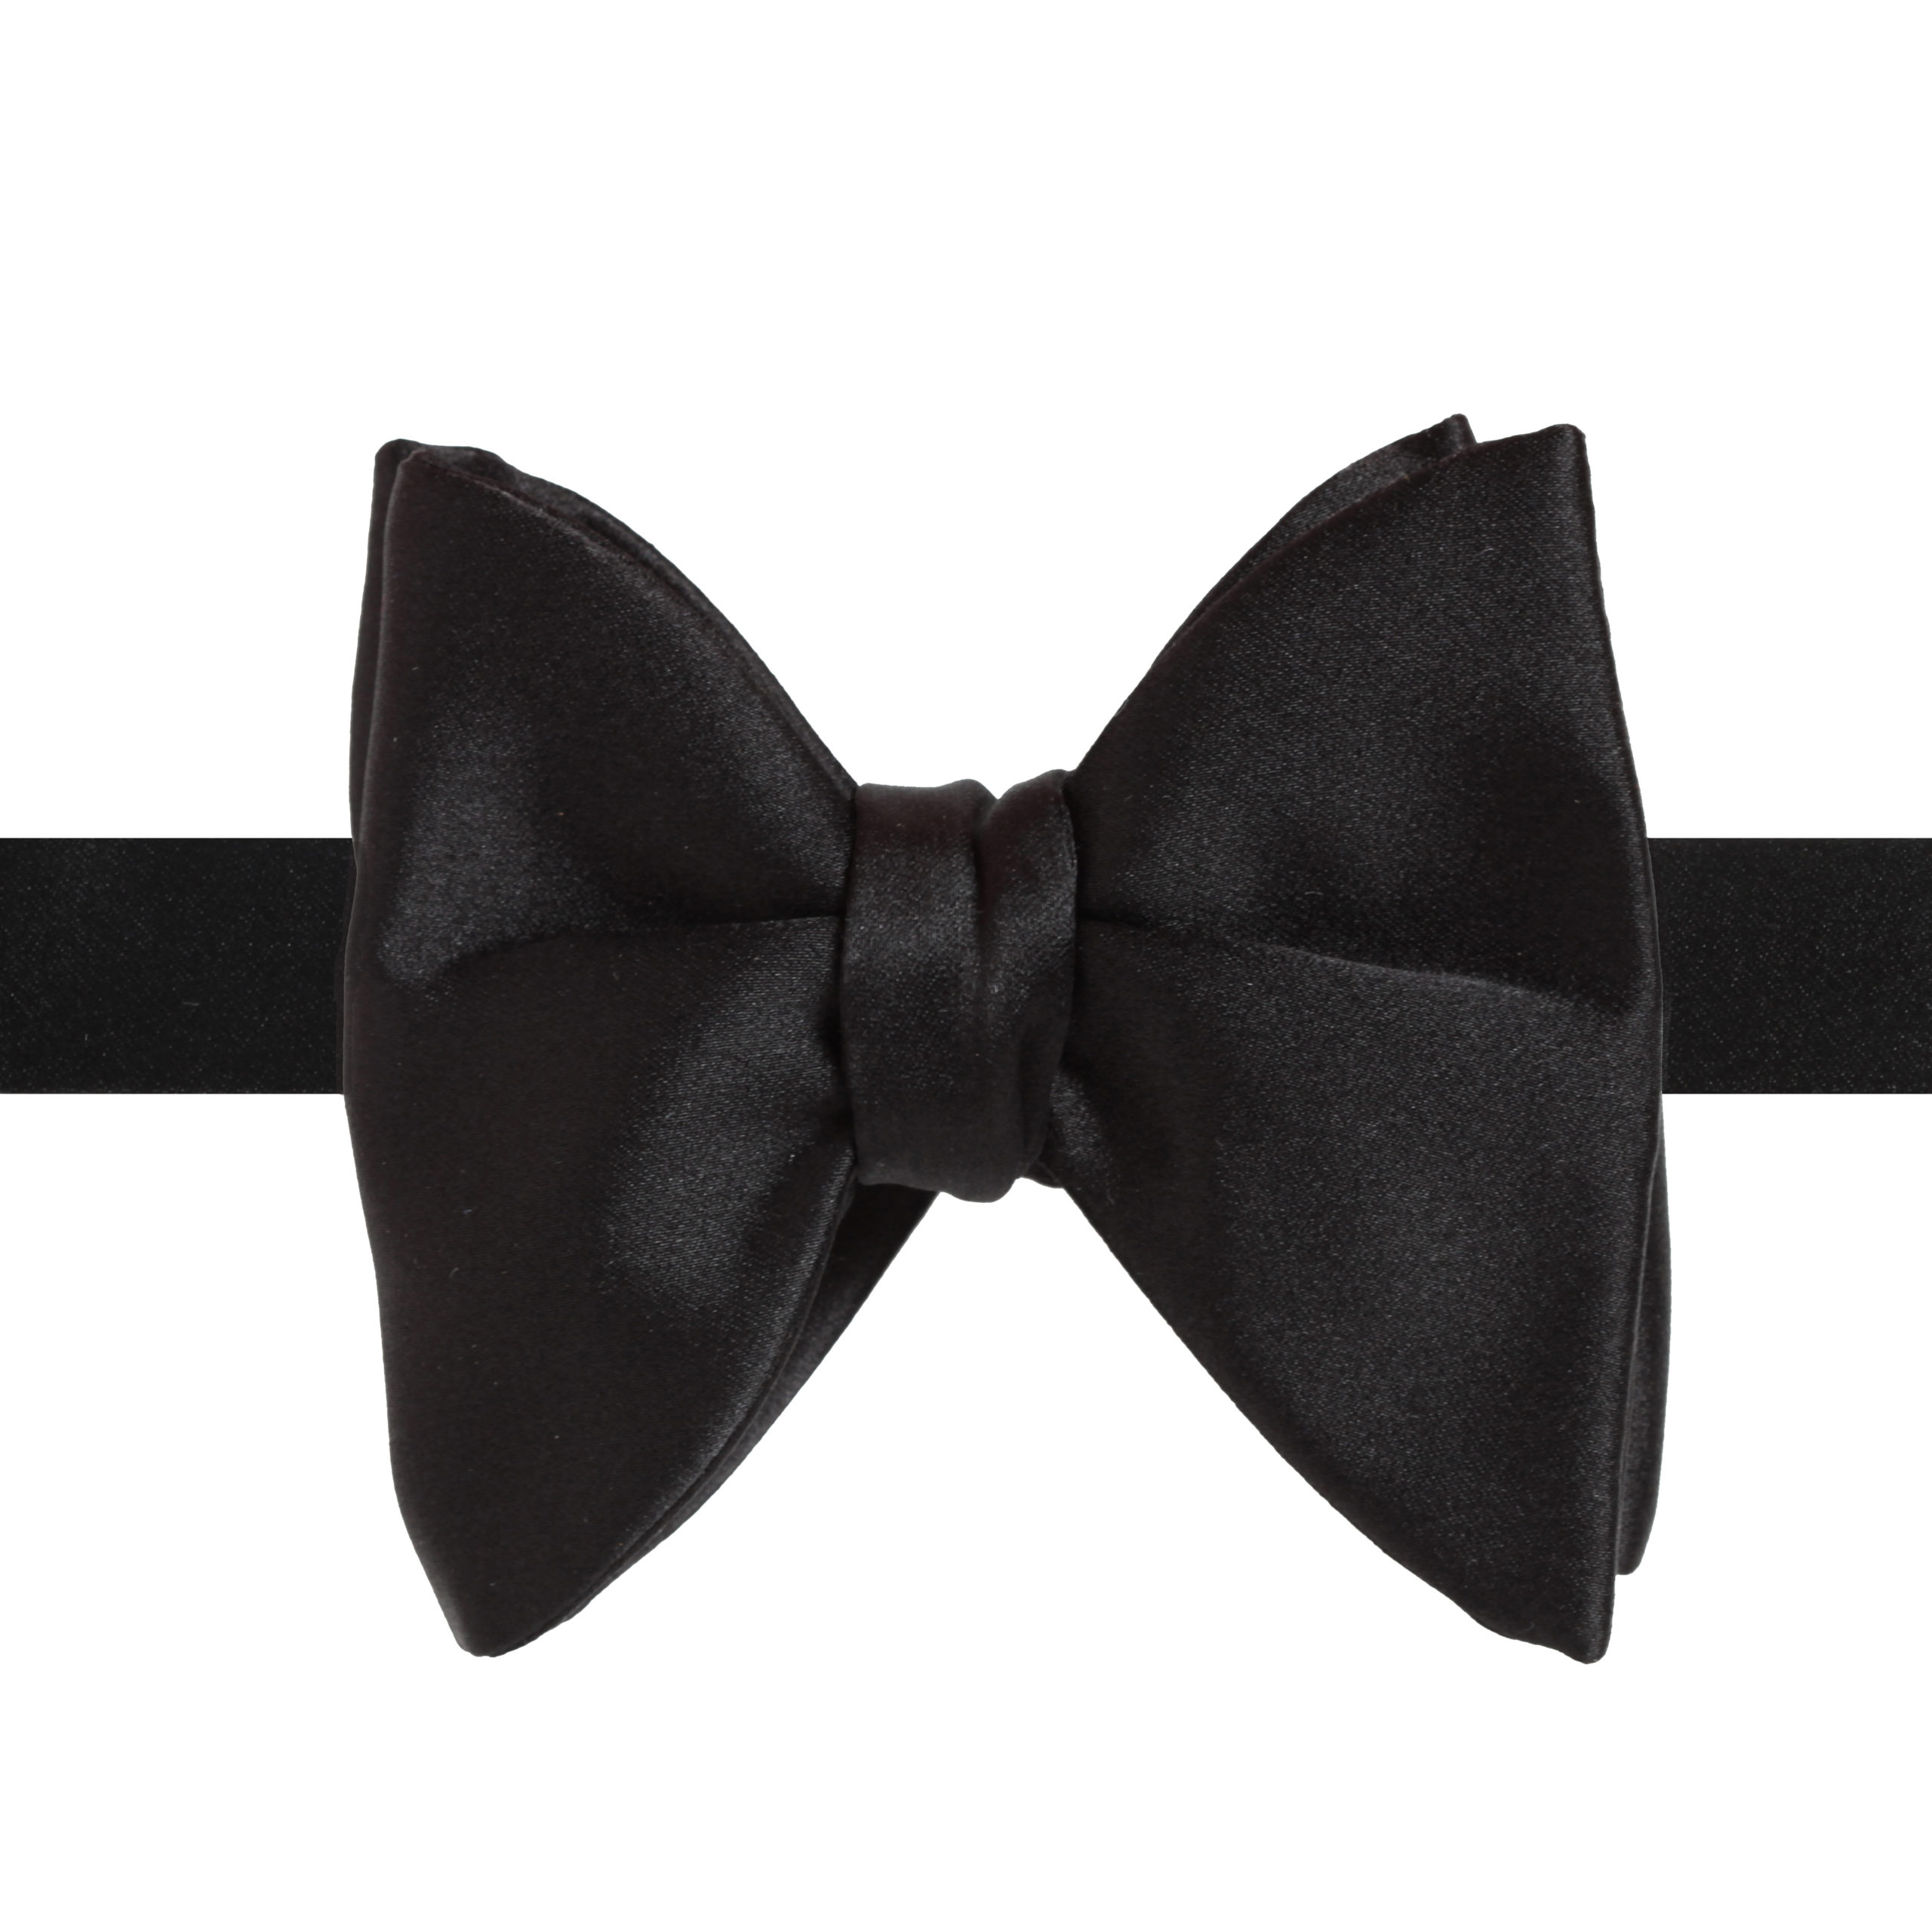 Modern Black Tie: A Guide - la Bowtique Bowties